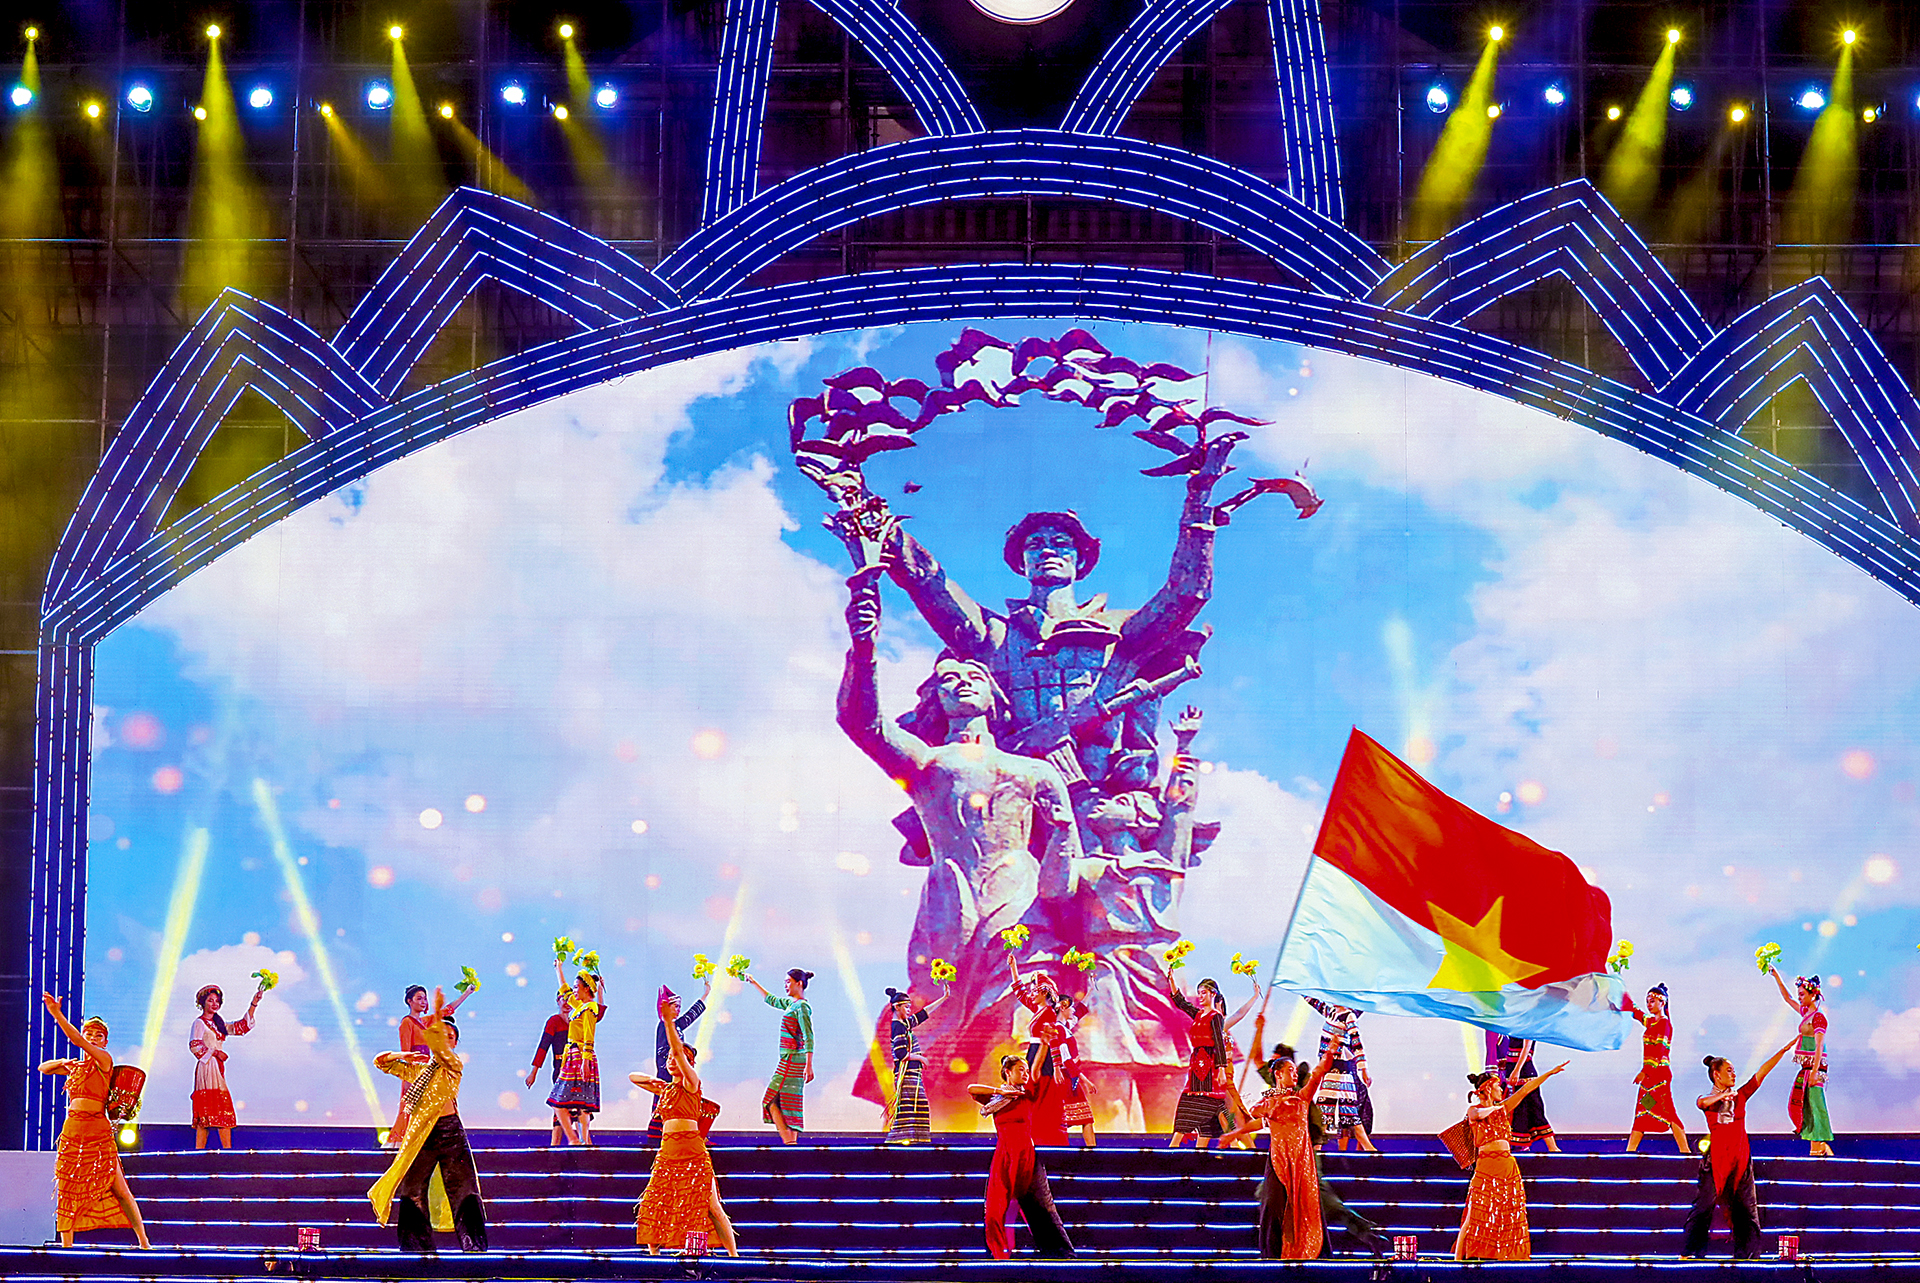 Tiết mục Hát mừng Nha Trang giải phóng sẽ được các nghệ sĩ Đoàn Ca múa nhạc Hải Đăng biểu diễn chào mừng kỷ niệm 48 năm Ngày Giải phóng miền Nam, thống nhất đất nước vào tối 30-4. Ảnh: NHÂN TÂM